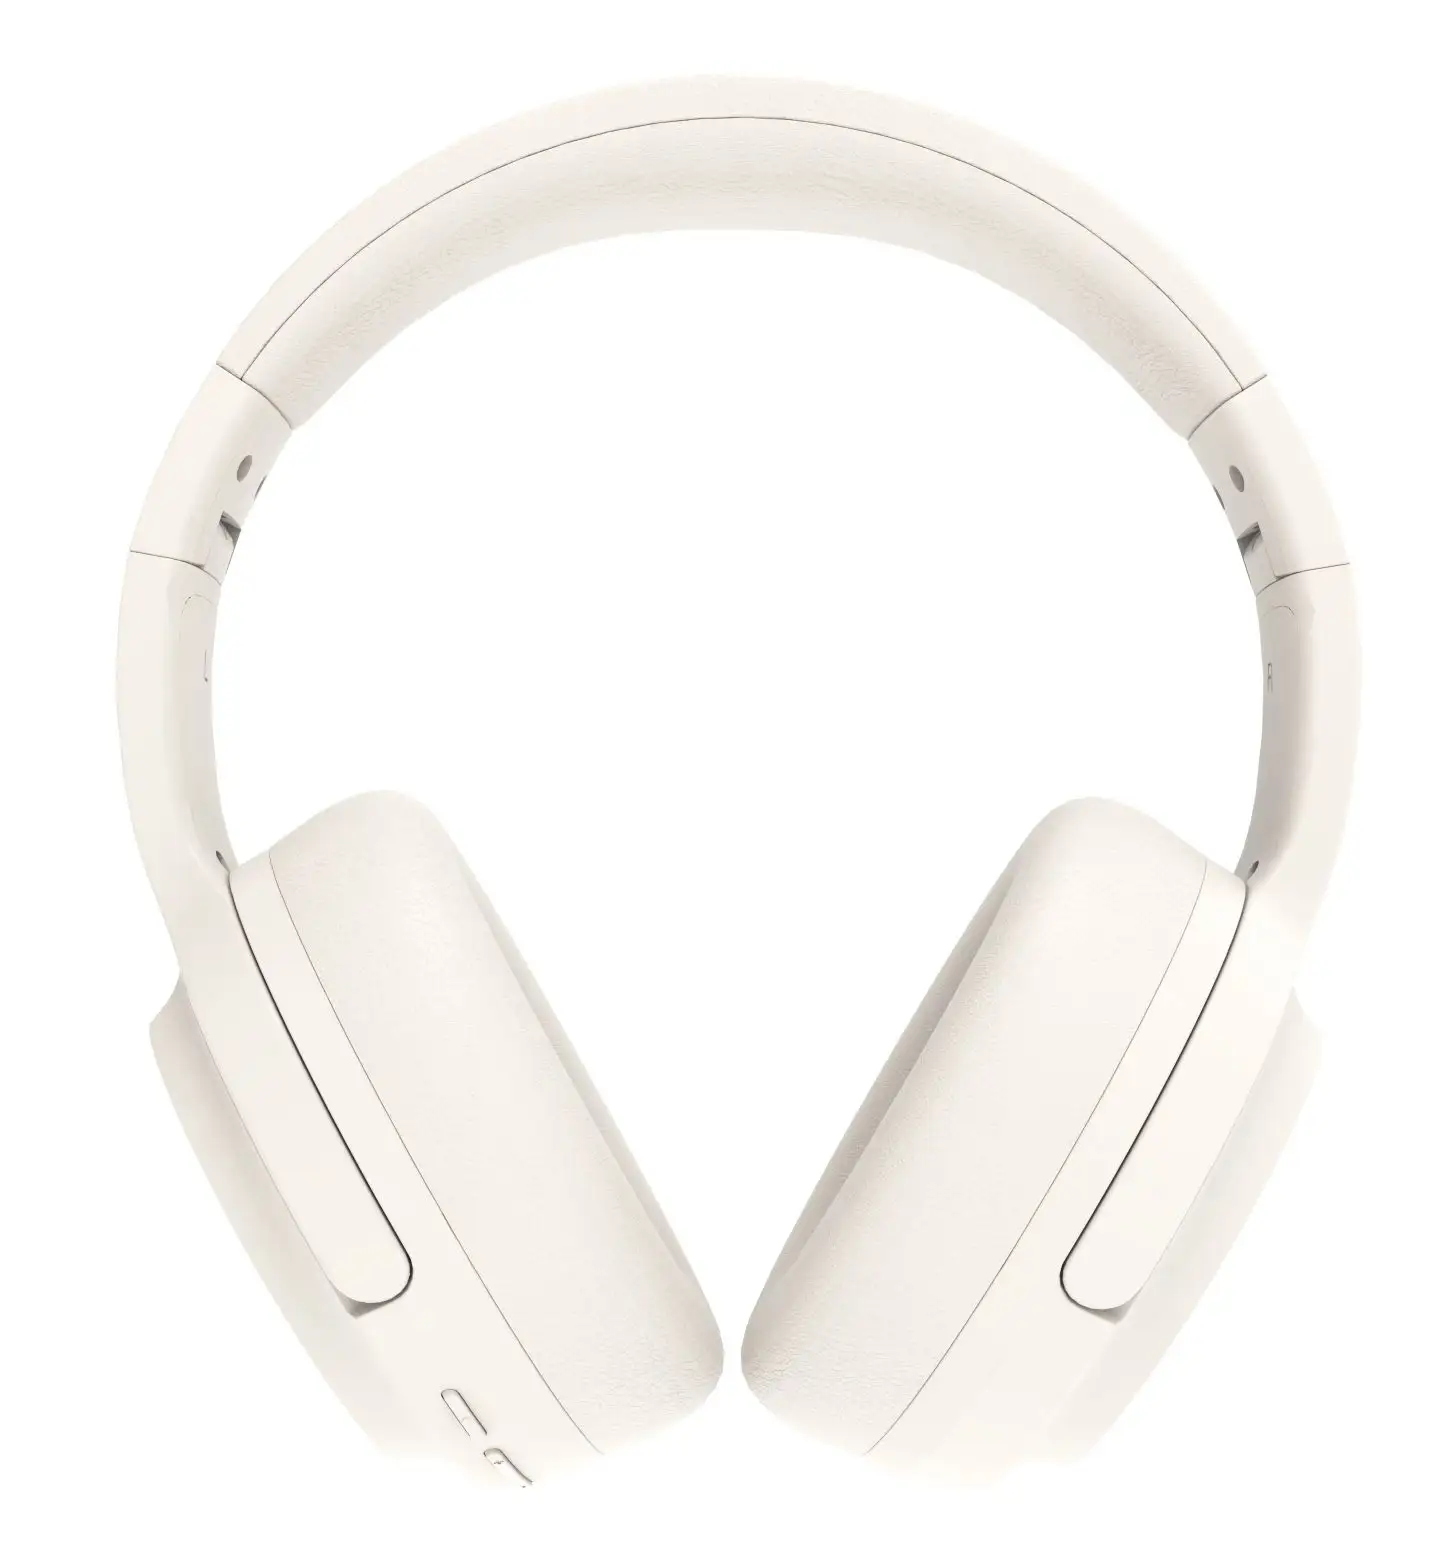 Mietubl Auriculares estéreo sobre la oreja Audifonos inalámbricos Auriculares Bluetooth con micrófono Auriculares